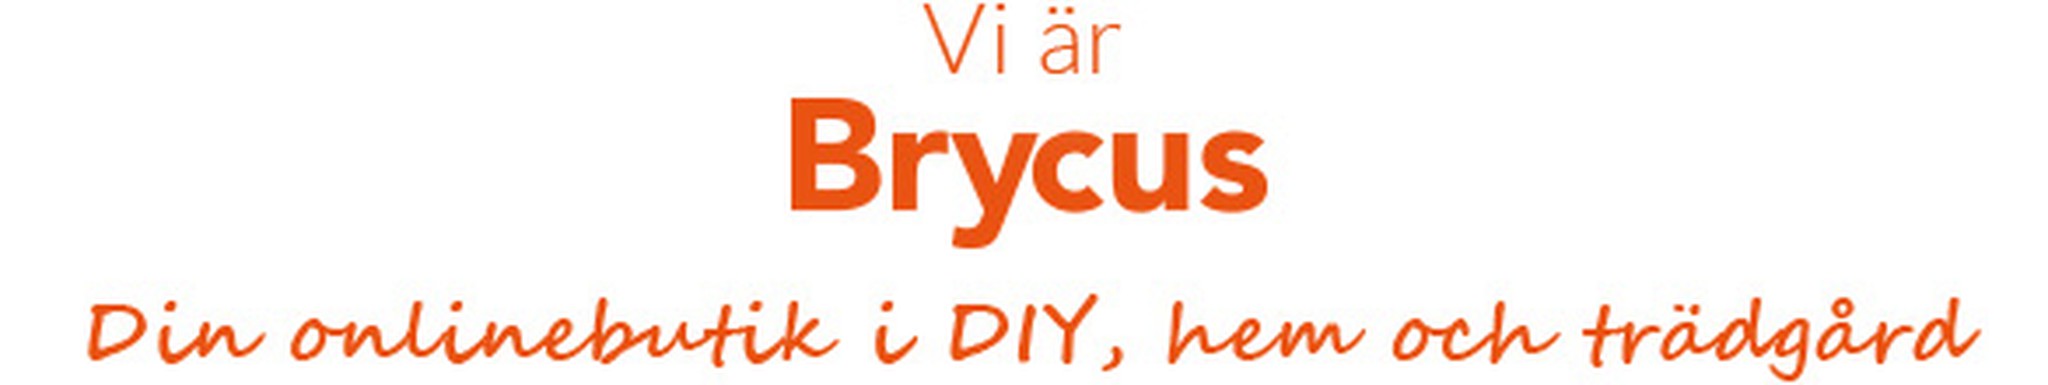 Vi är Brycus, din DIY, hem- och trädgårdsbutik